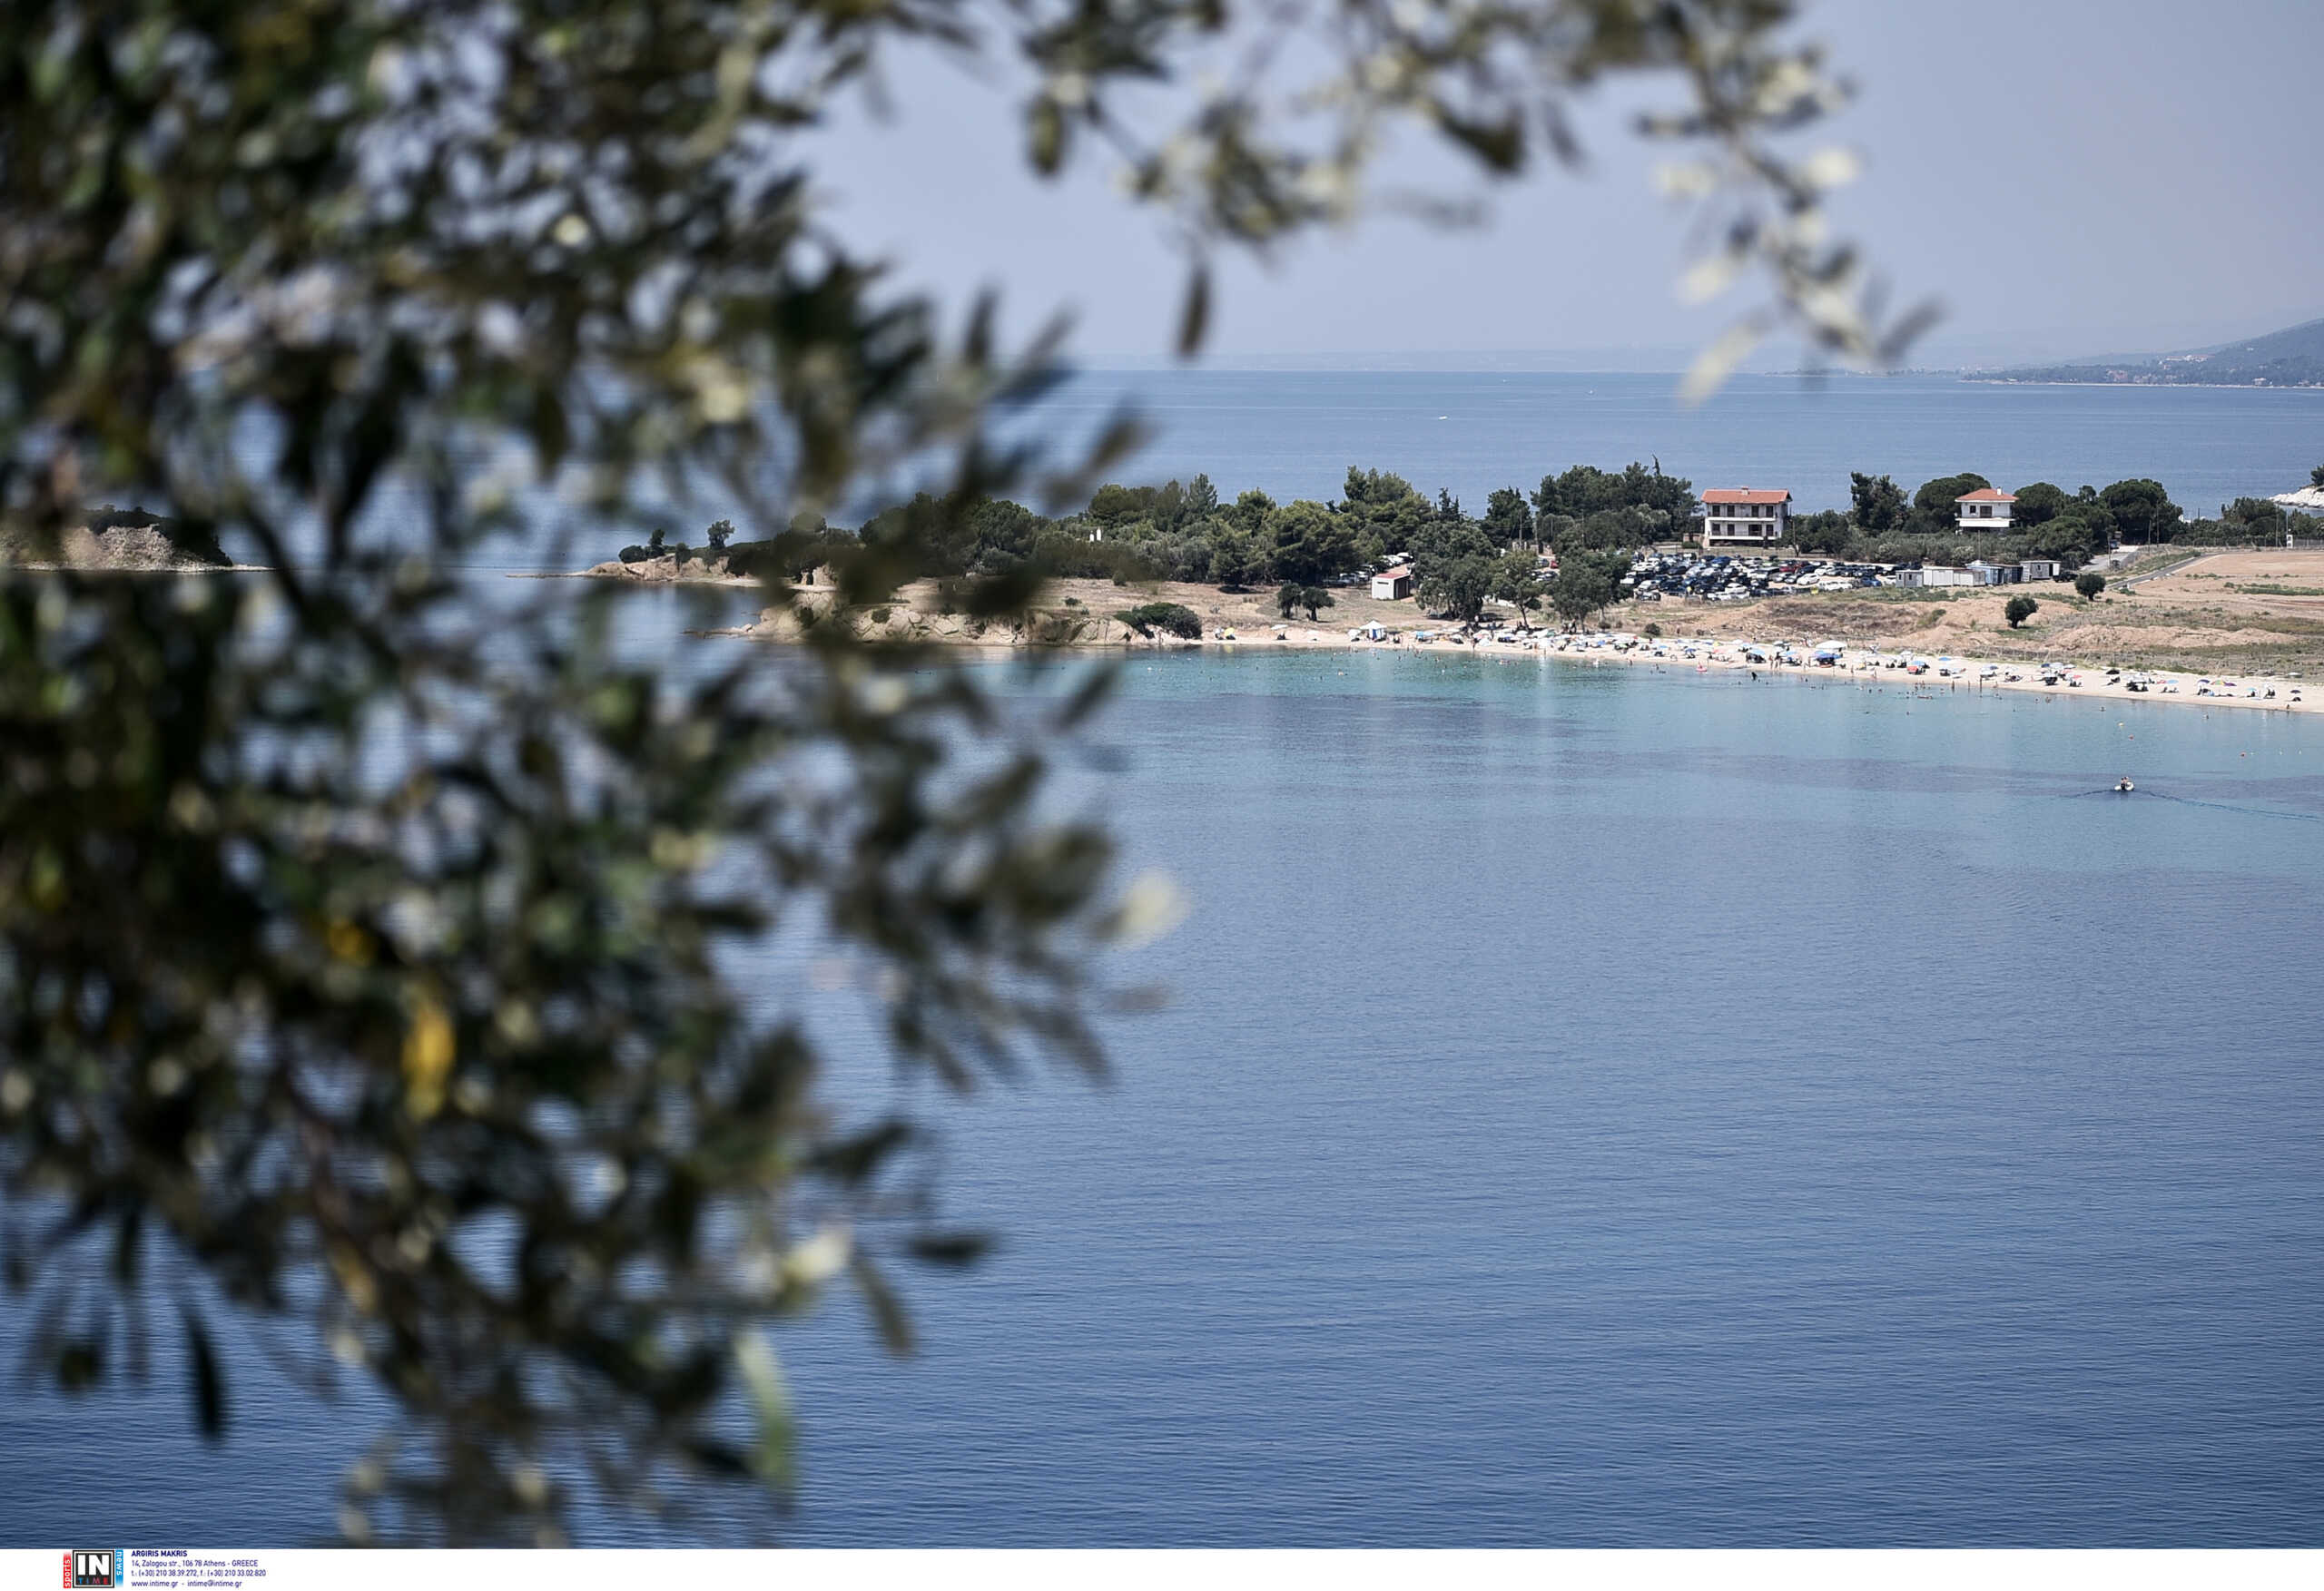 Τουρισμός: Αυτό είναι το ελληνικό νησί που έκανε την ευχάριστη έκπληξη τη φετινή σεζόν – Δείτε τα στοιχεία